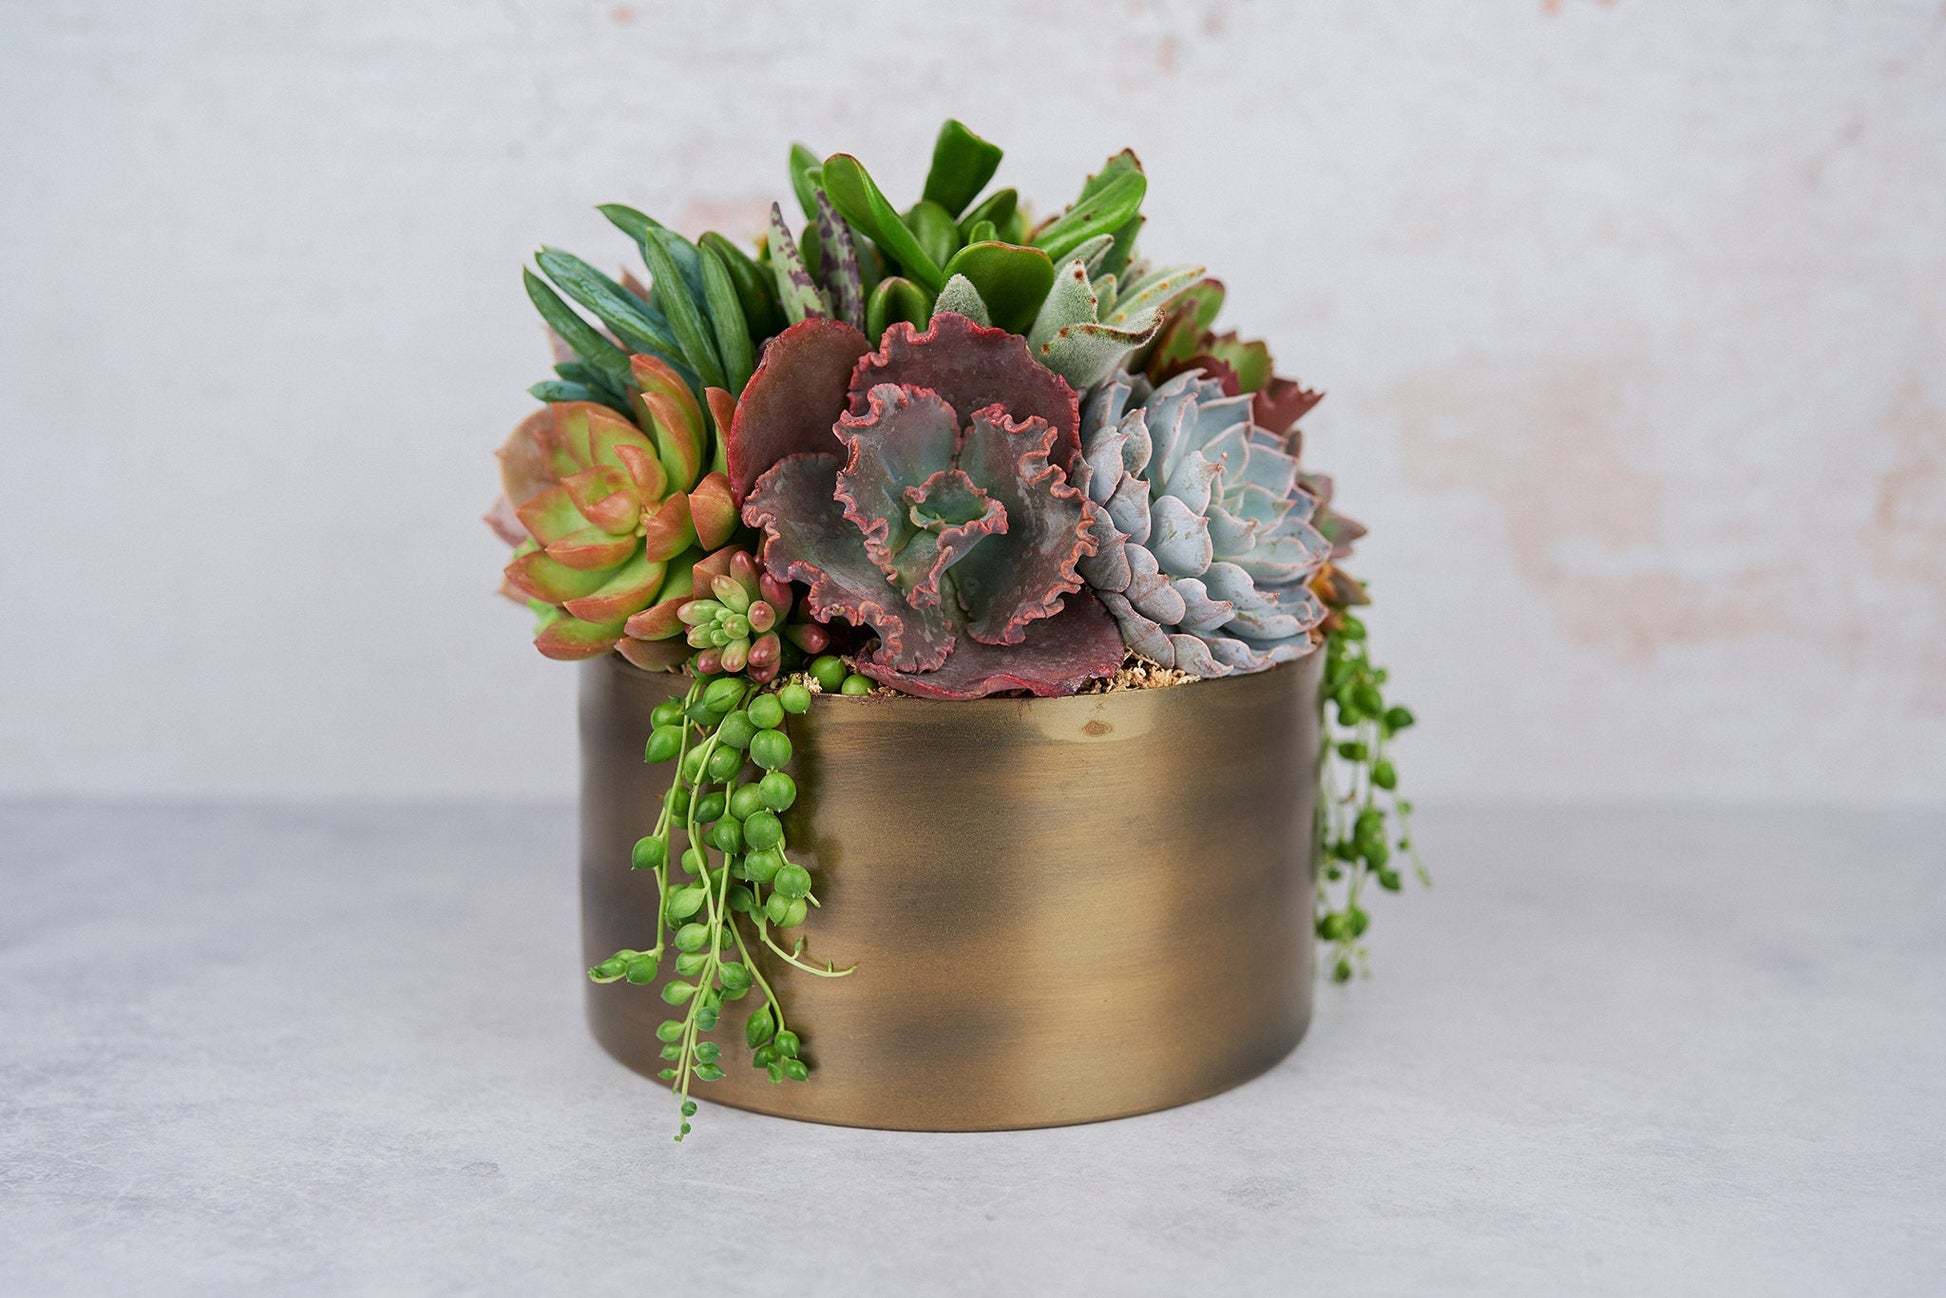 Bronze Metal Bowl Succulent Arrangement Planter: Modern Living Succulent Gift, Centerpiece for Weddings & Events, Housewarming Gift